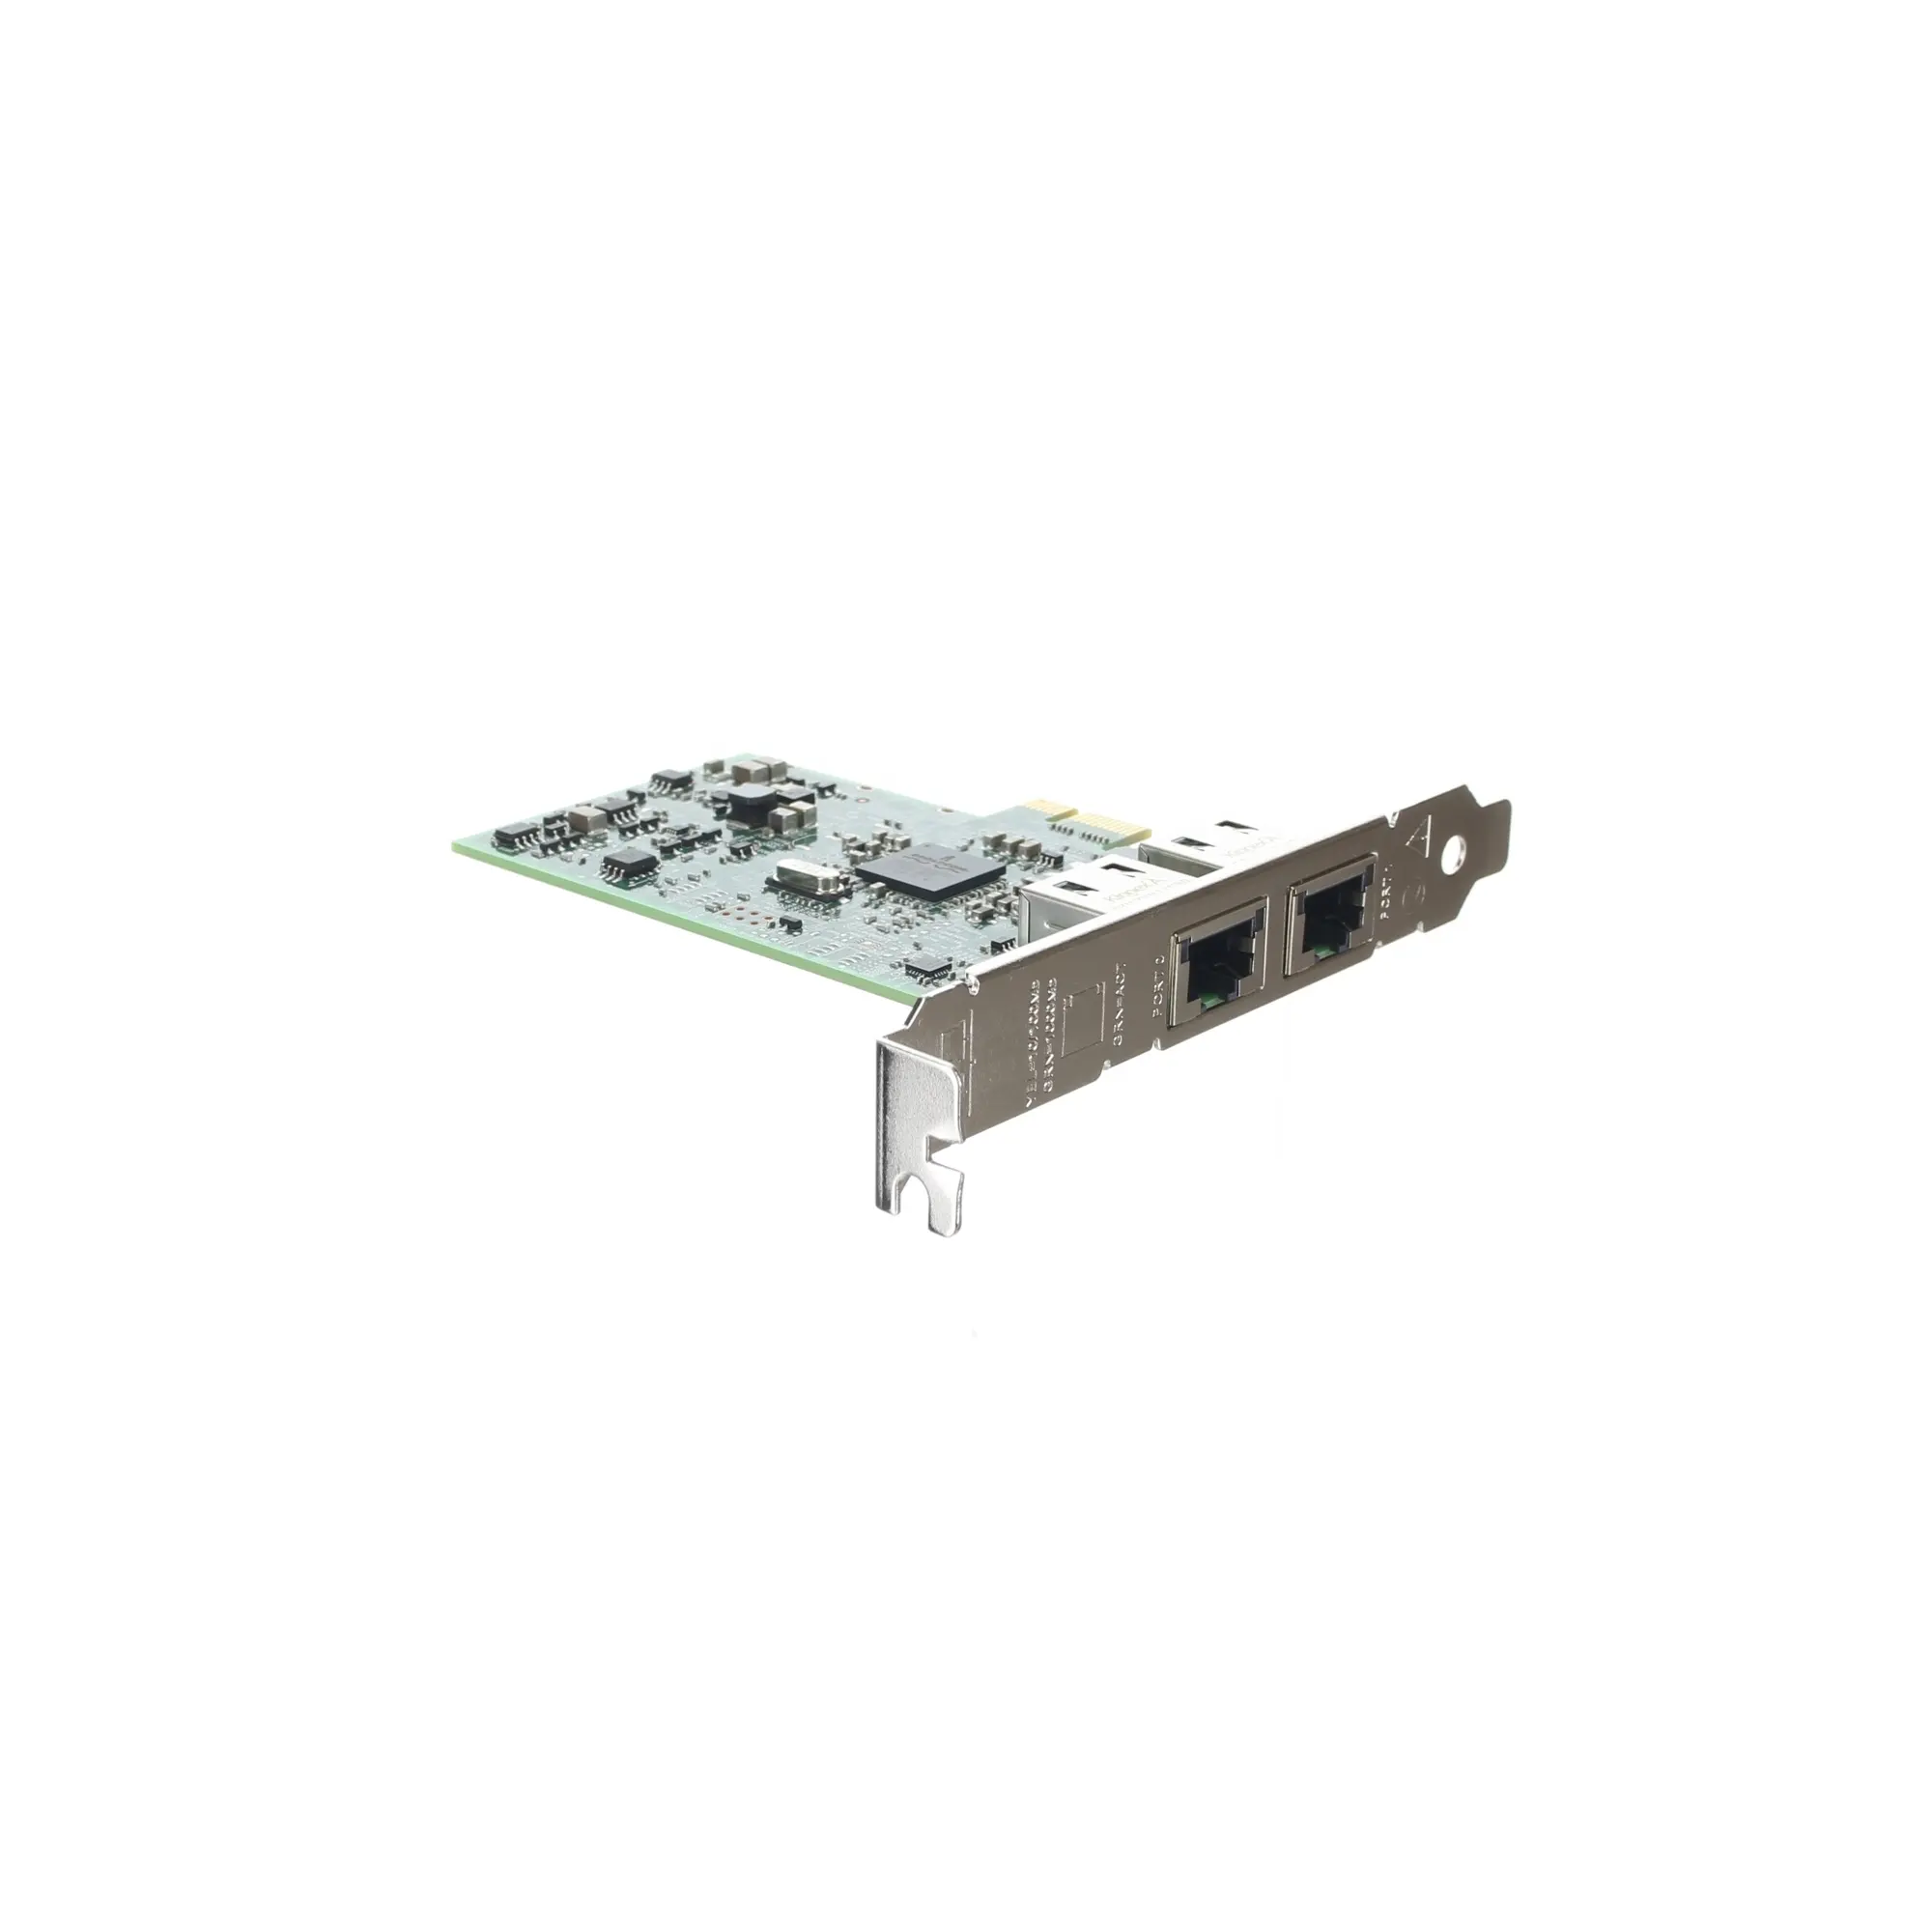 Broadcom 5720 Adaptateur BASE-T double port 1GbE, carte réseau PCIe pleine hauteur pour serveur dell